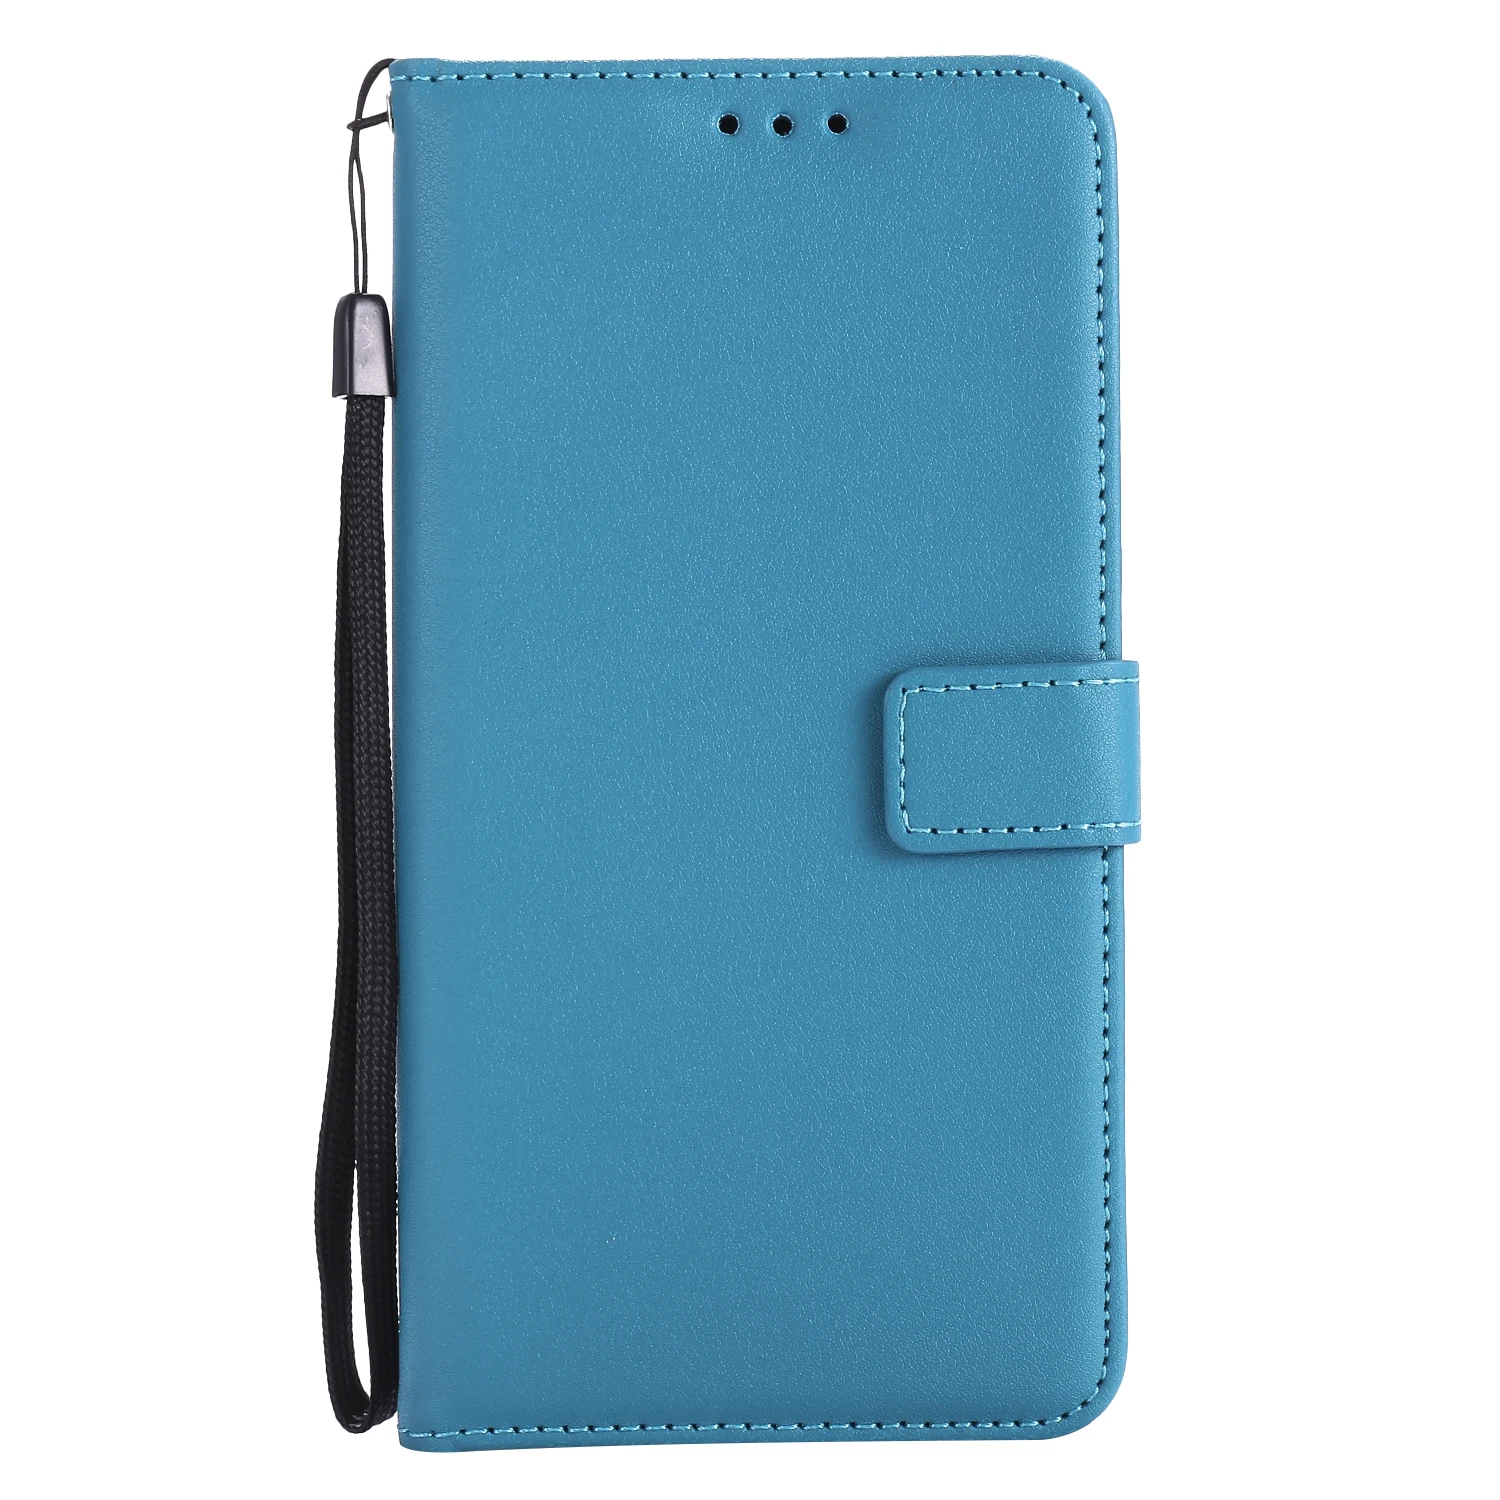 Кожаный чехол для телефона LG K7 X210 ds X210ds AS330 для Funda LG K 7X210 ds 210ds Coque для LG M1 M 1 Treasure LTE флип-чехлы - Цвет: Blue